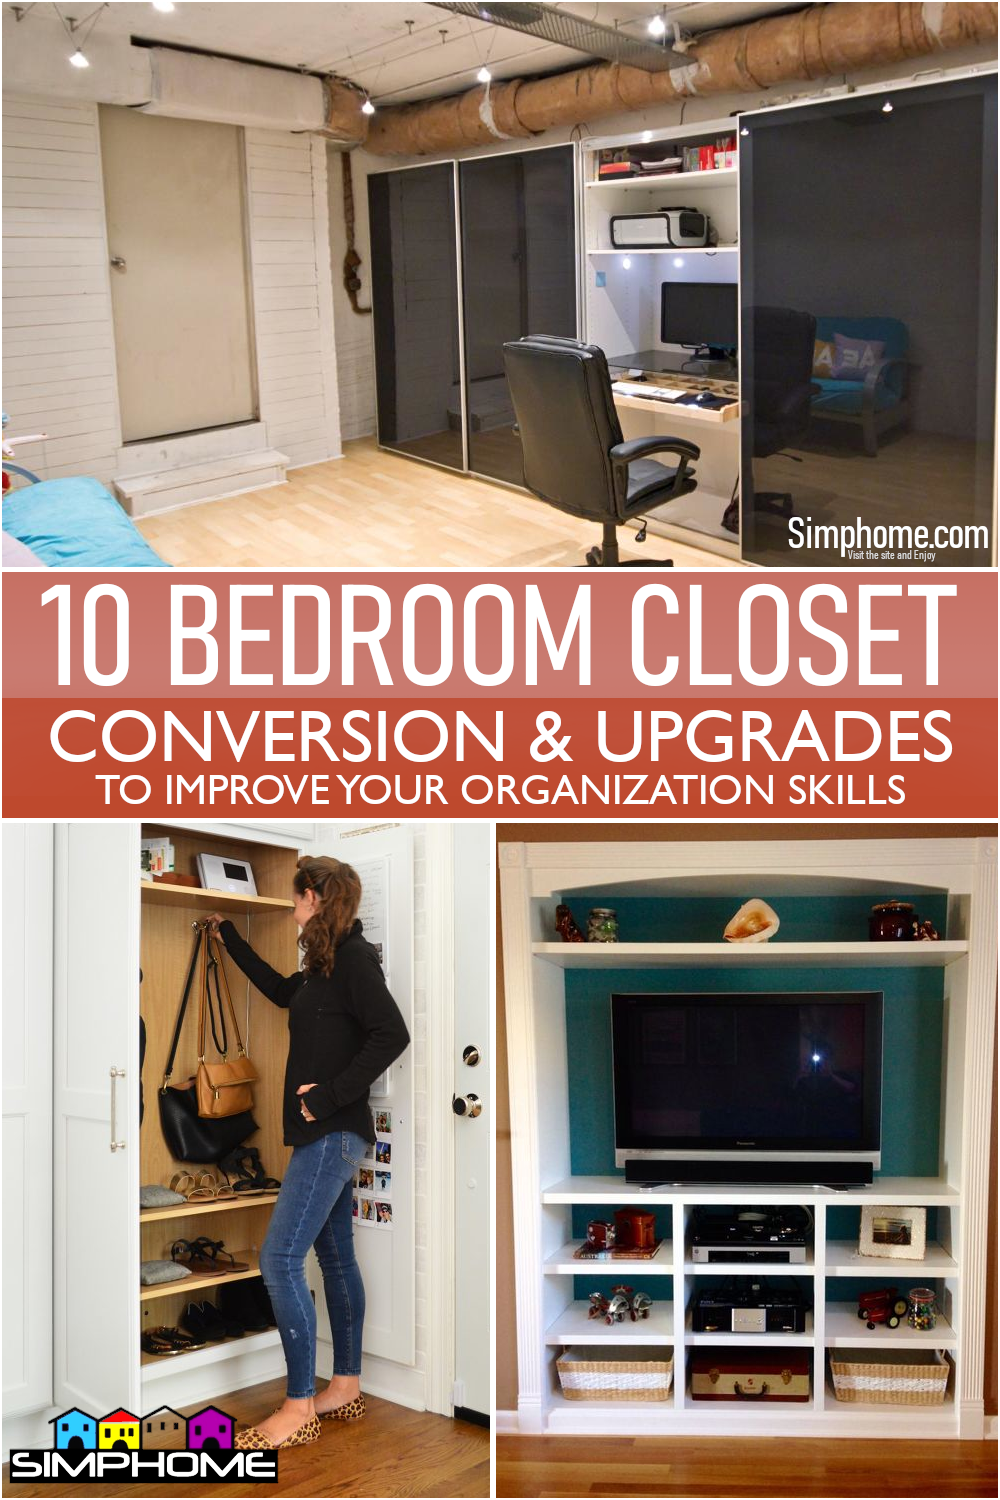 The 10 Bedroom Closet Conversions via Simphome.com